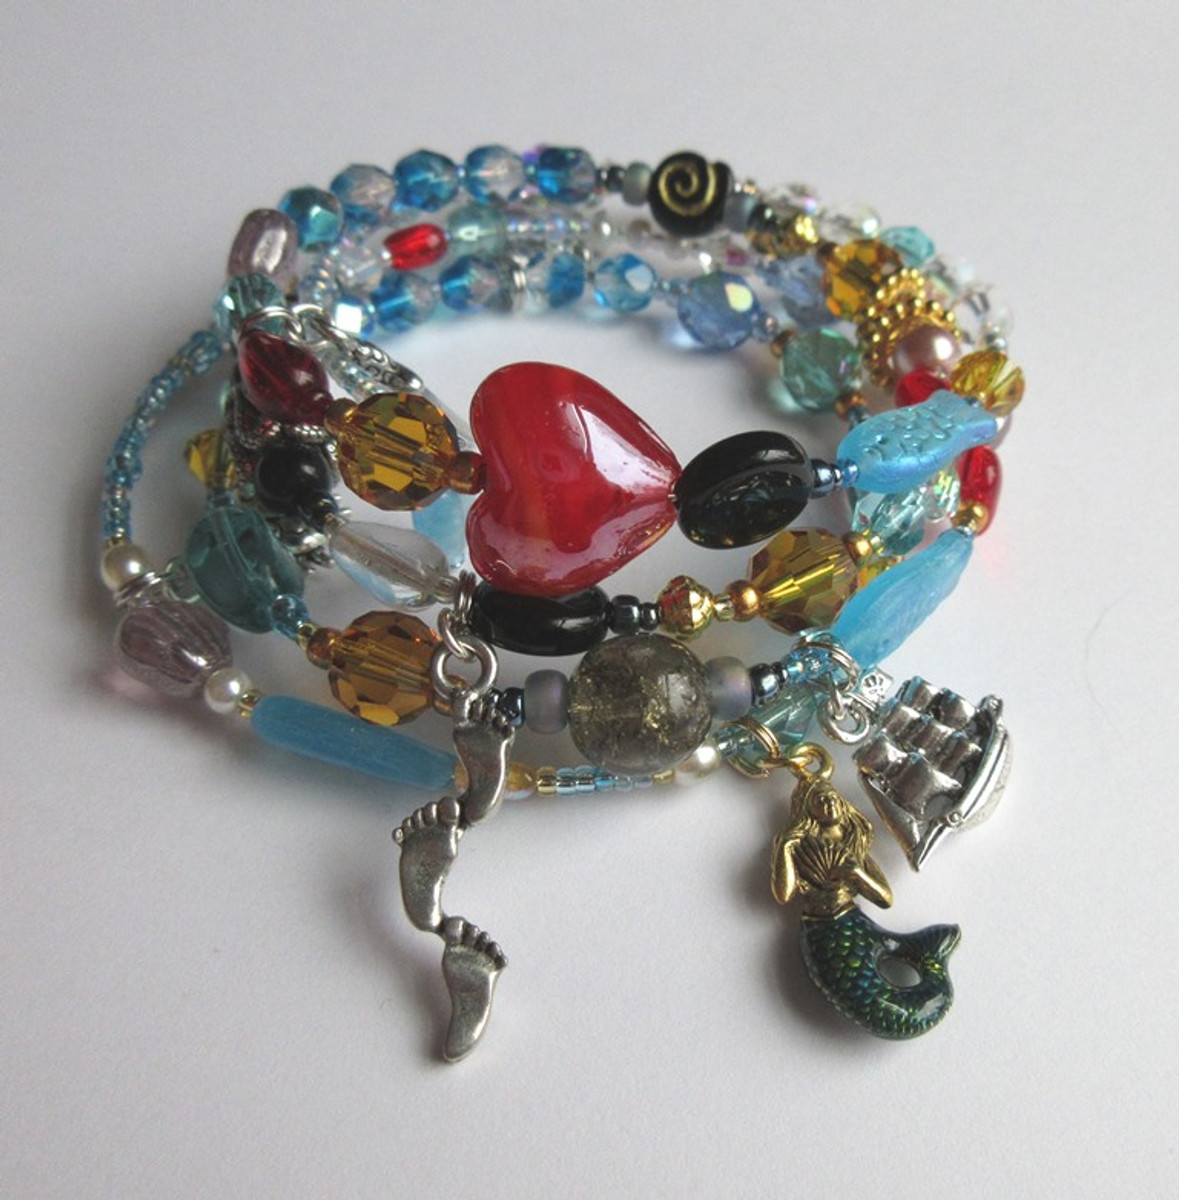 mermaid earrings mermaid Aqua glass painted bead with silver mermaid charm